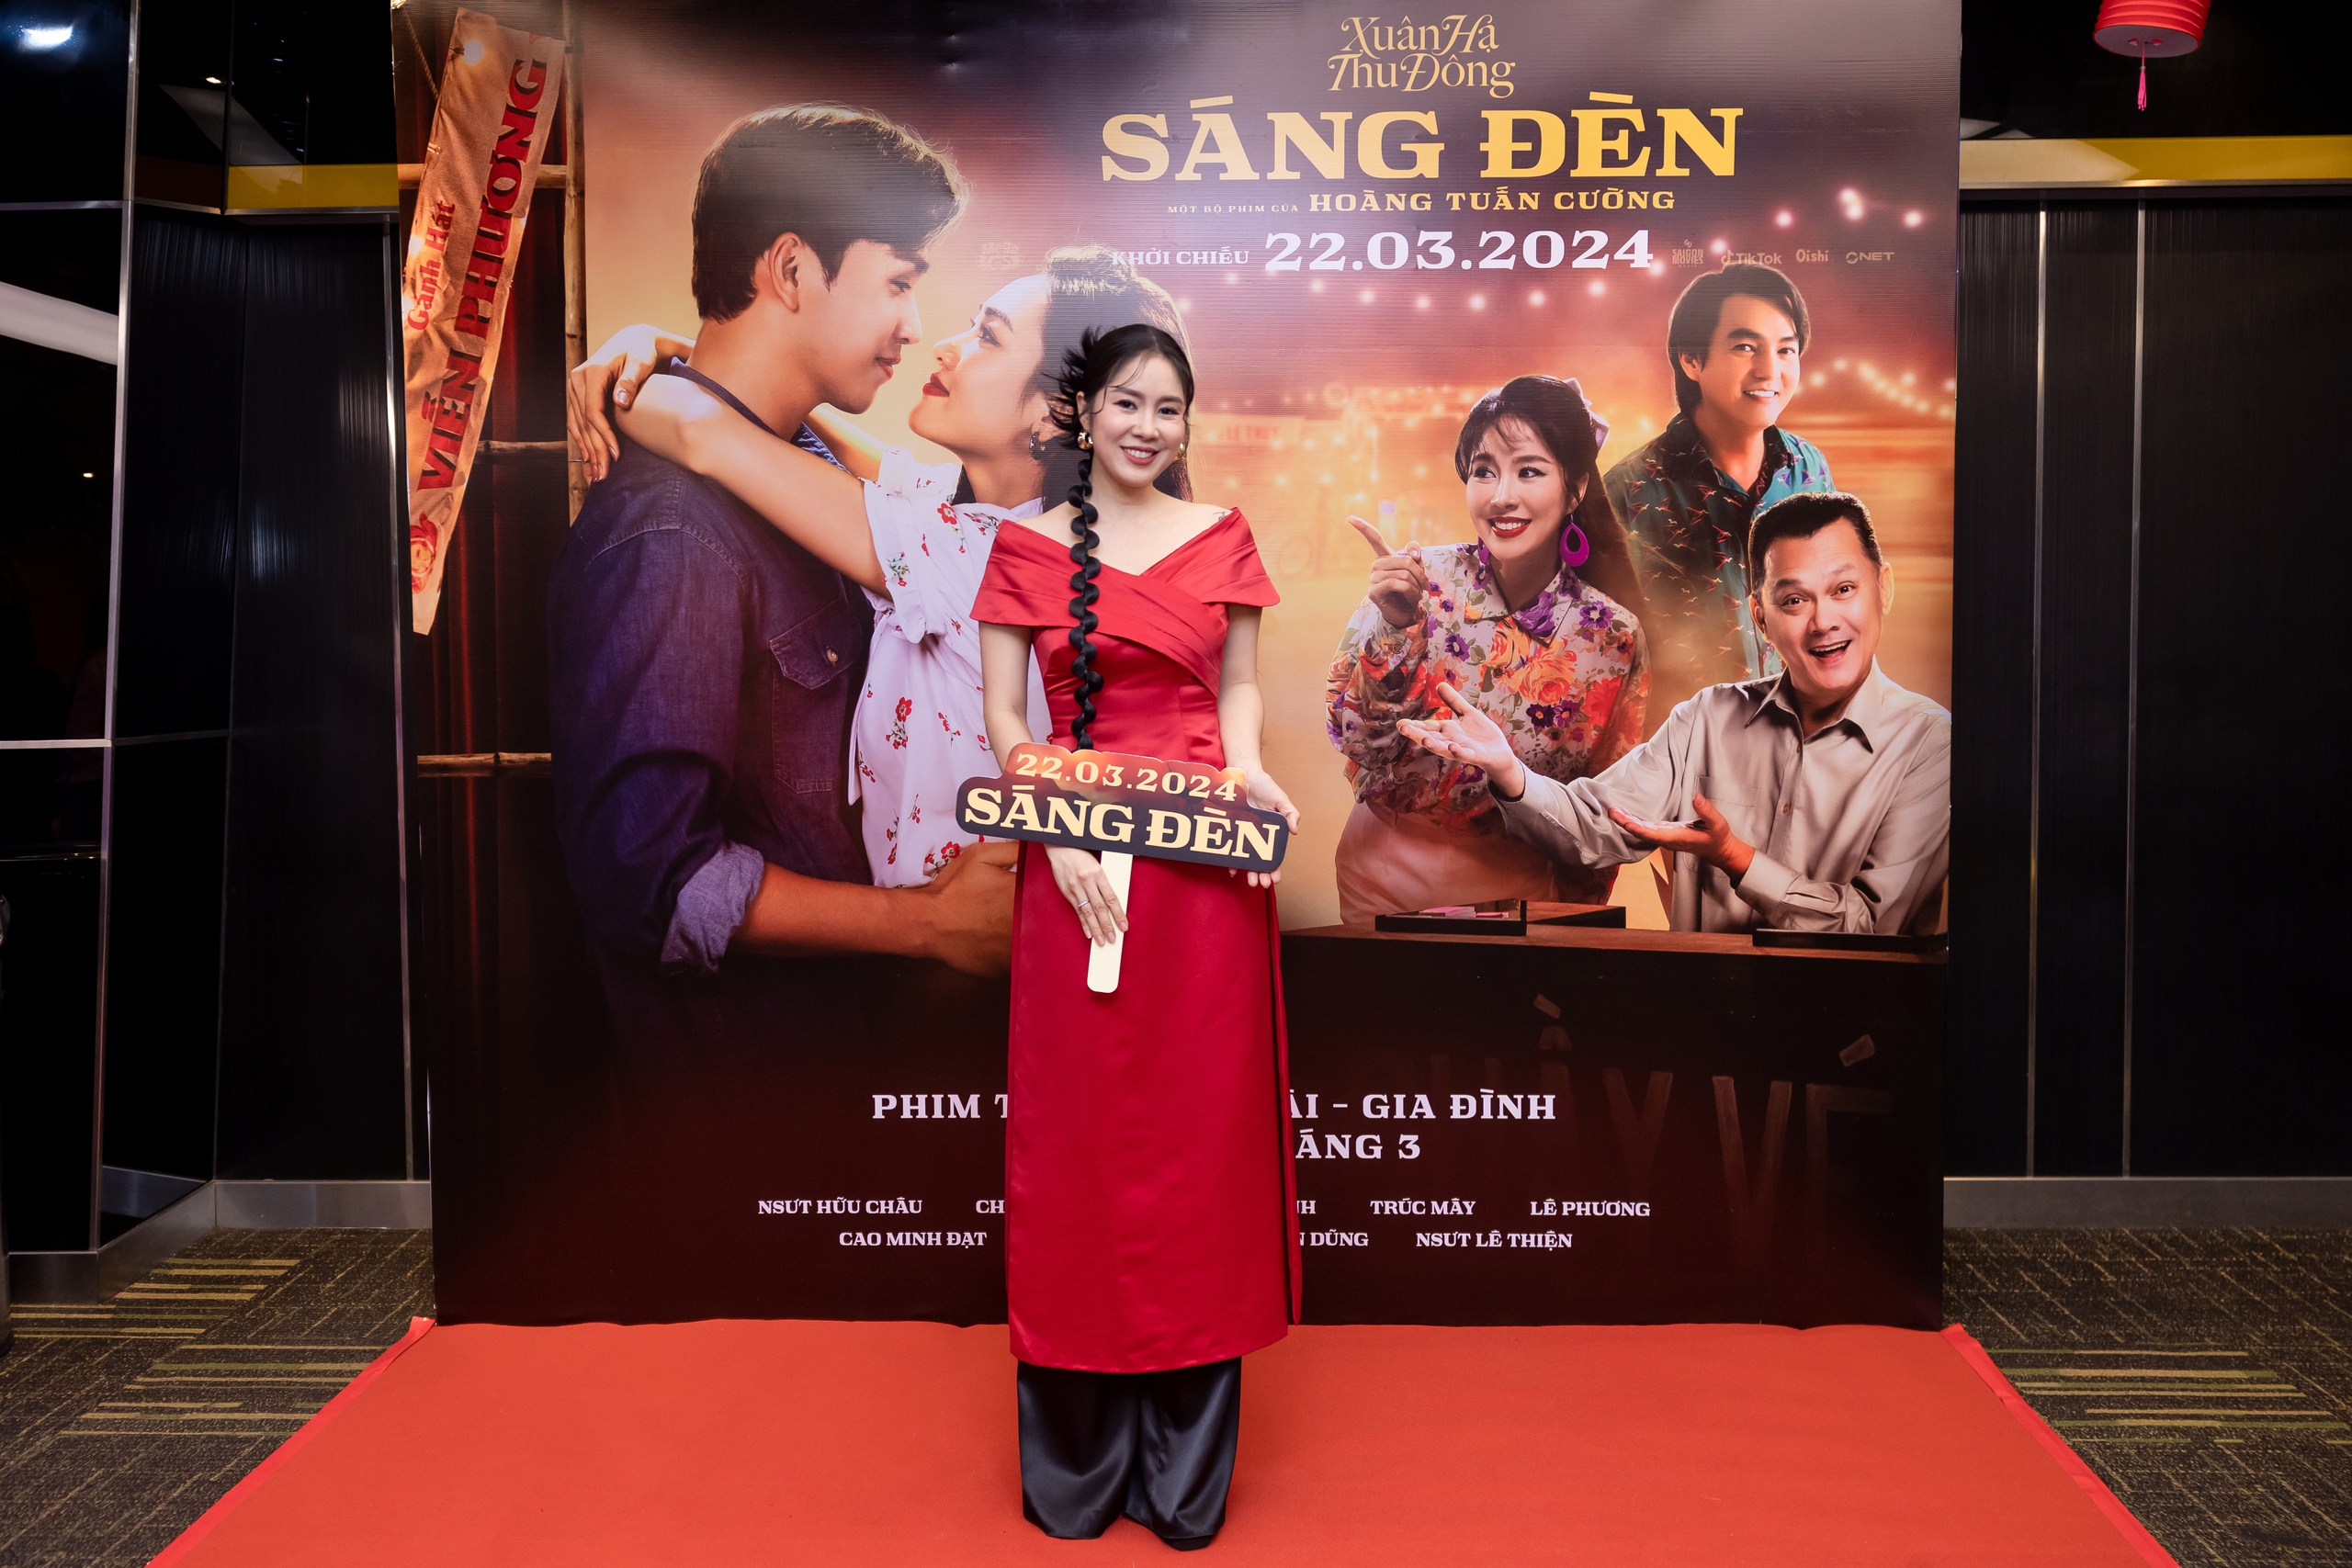 Nghệ sĩ cải lương Chí Tâm đưa vợ đến mừng 'Sáng đèn' trở lại rạp- Ảnh 3.